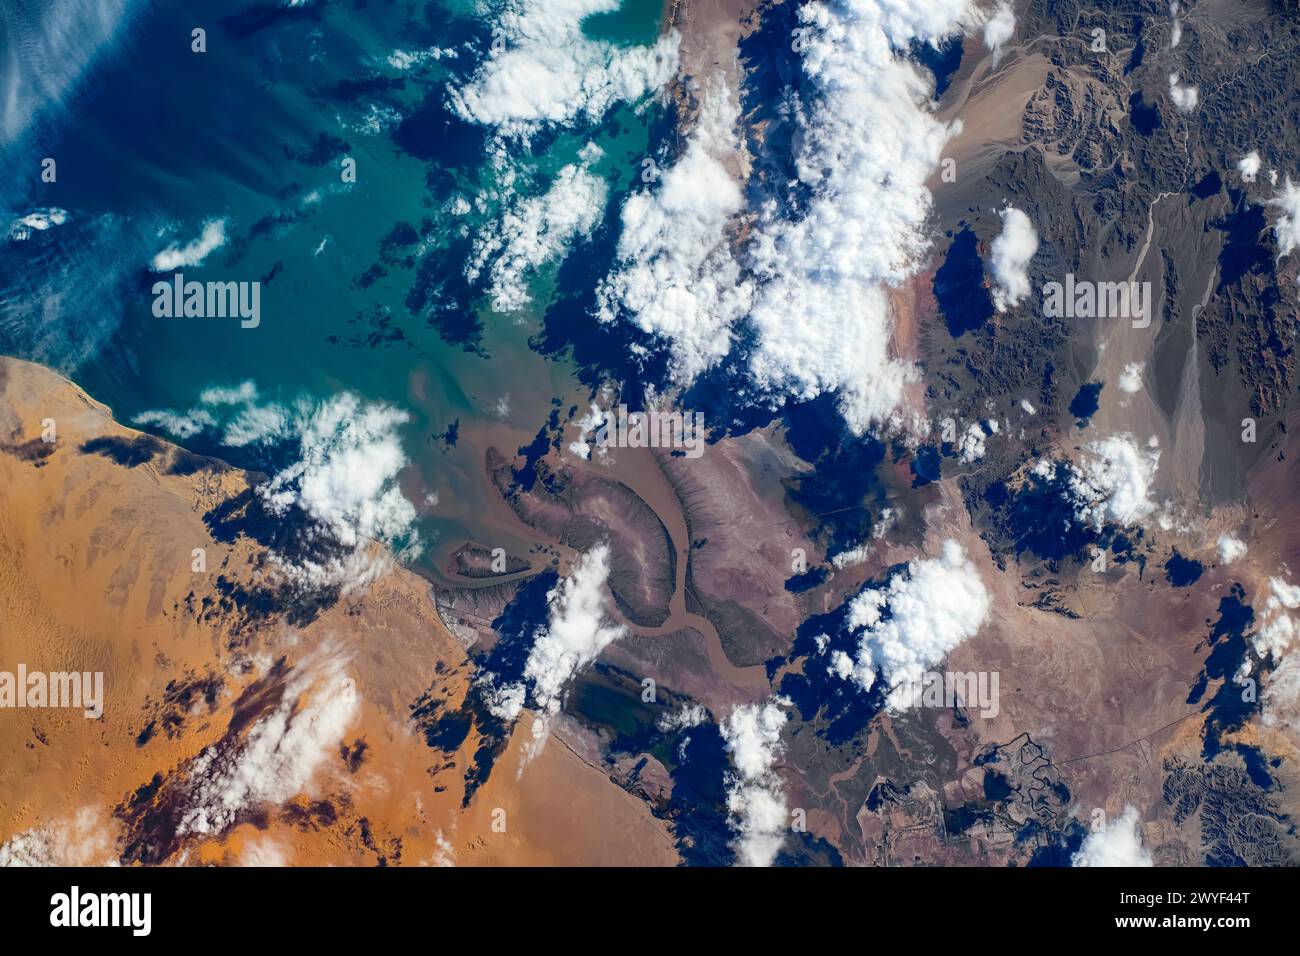 Küstengebiete am Golf von Kalifornien, USA, Mexiko. Digitale Verbesserung eines von der NASA bereitgestellten Bildes Stockfoto